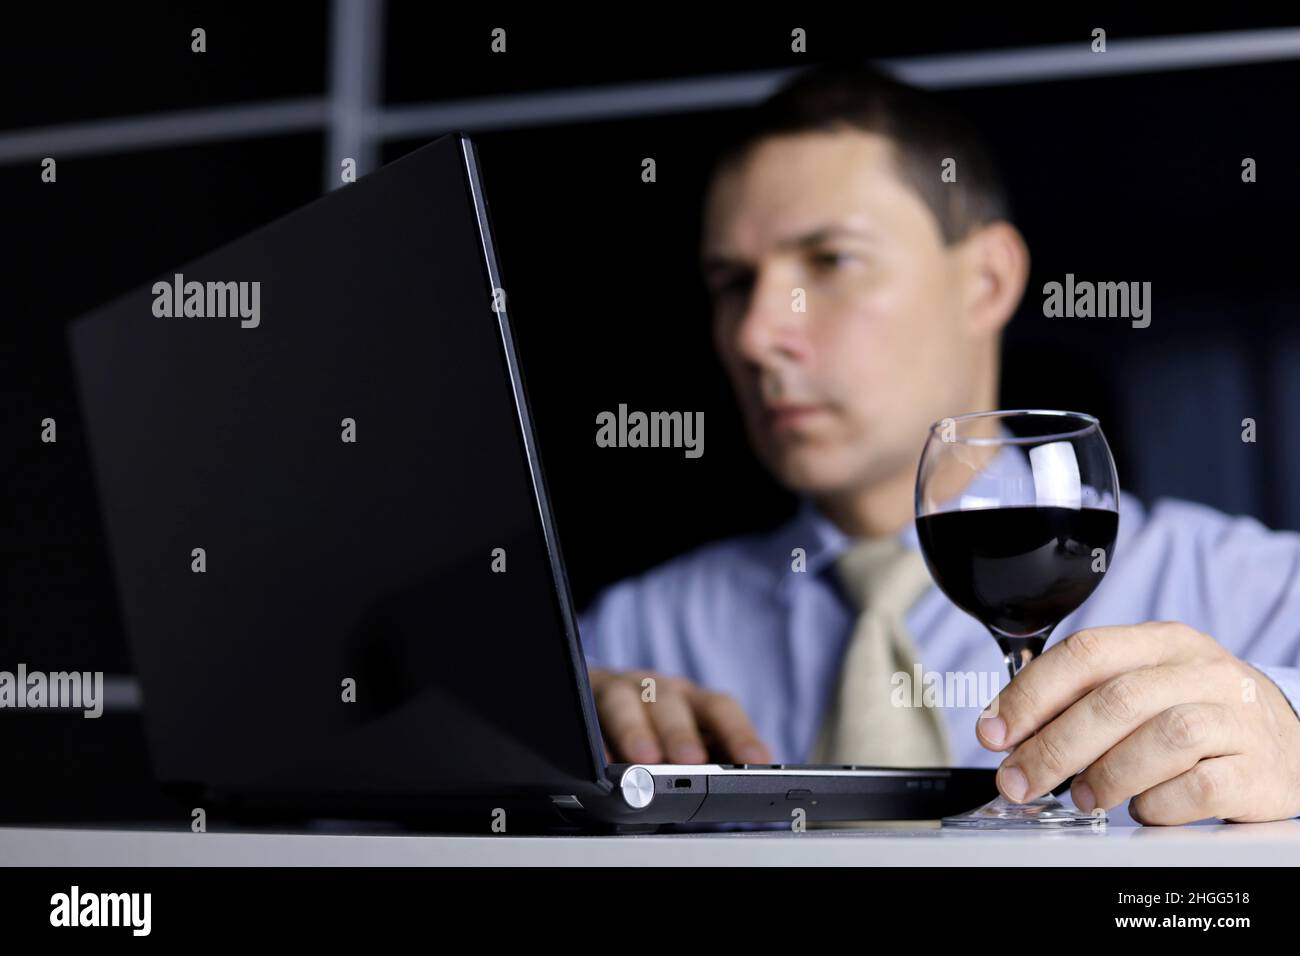 Uomo con un bicchiere di vino rosso in mano, seduto al computer portatile. Lavorate a distanza a casa o rilassatevi in ufficio con una bevanda alcolica Foto Stock